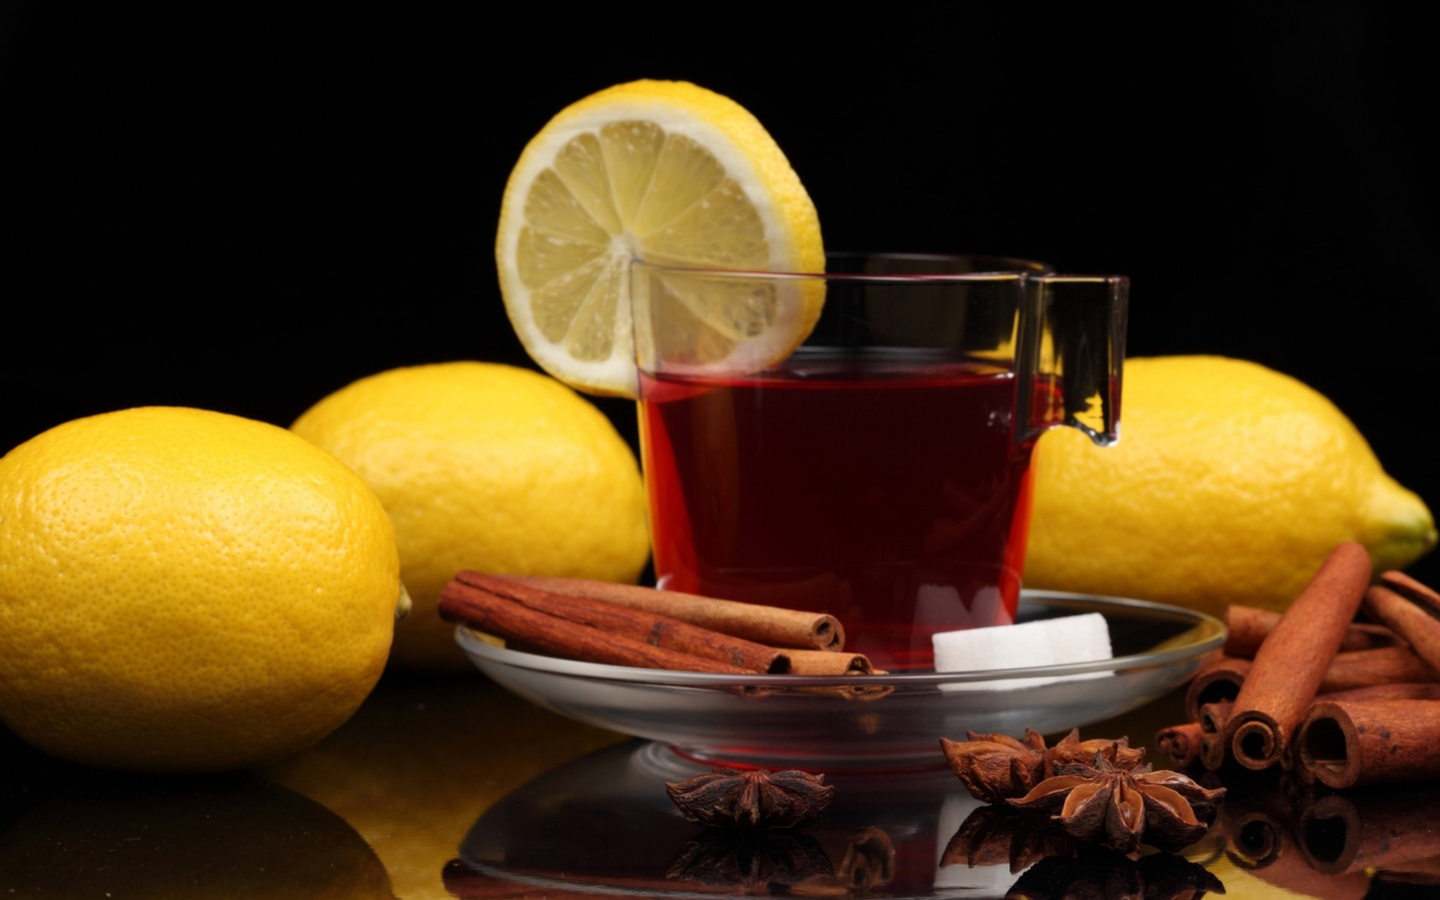 Das Tea with lemon and cinnamon Wallpaper 1440x900